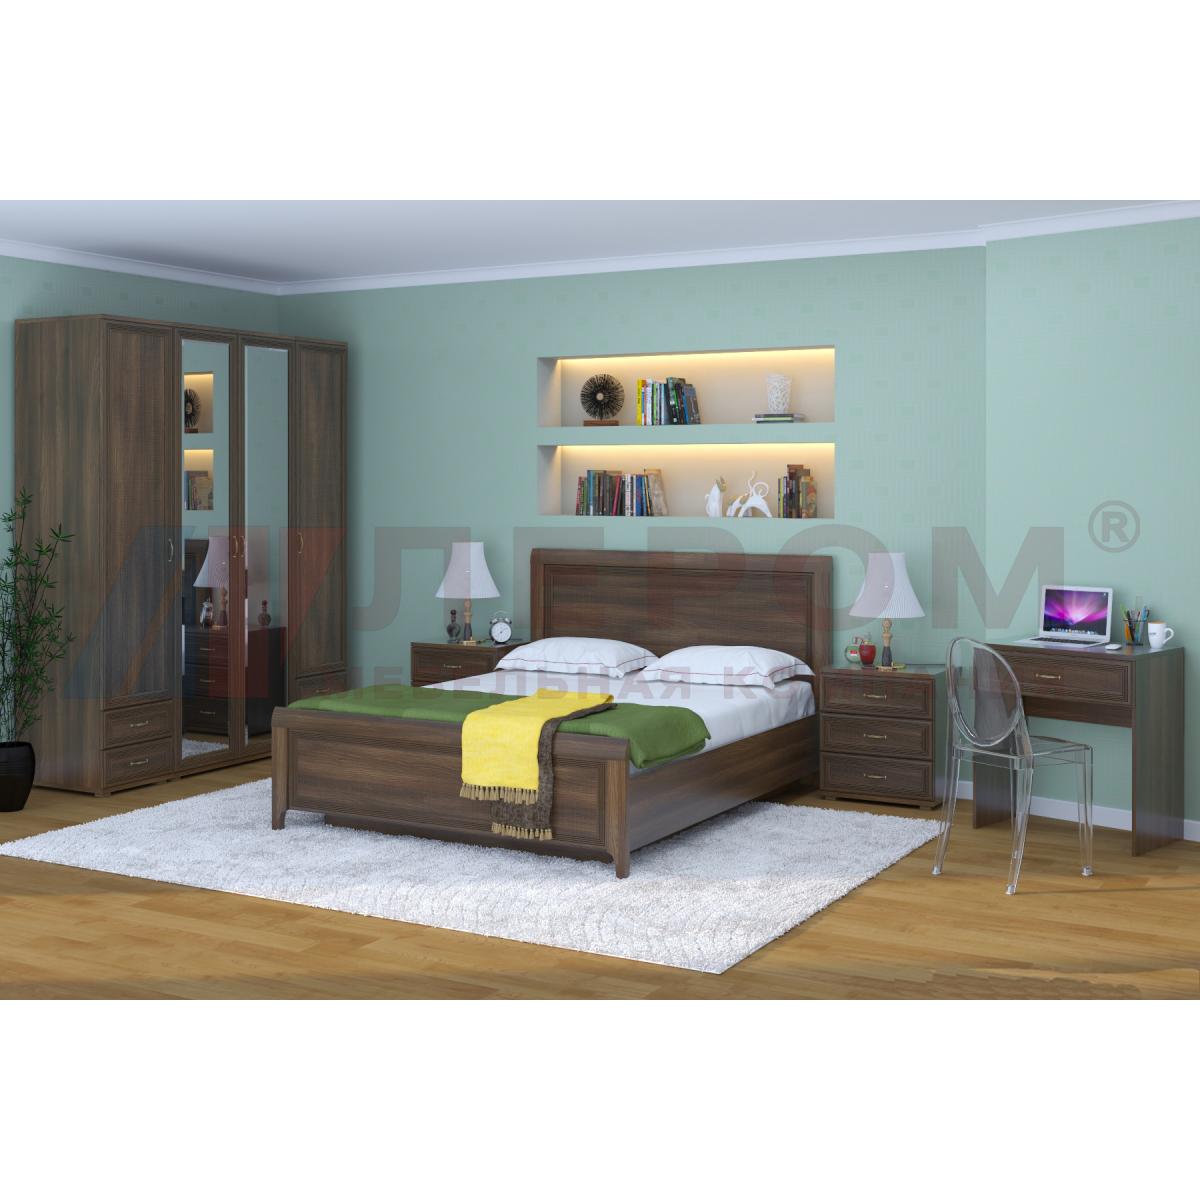 Комплект мебели карина для спальни